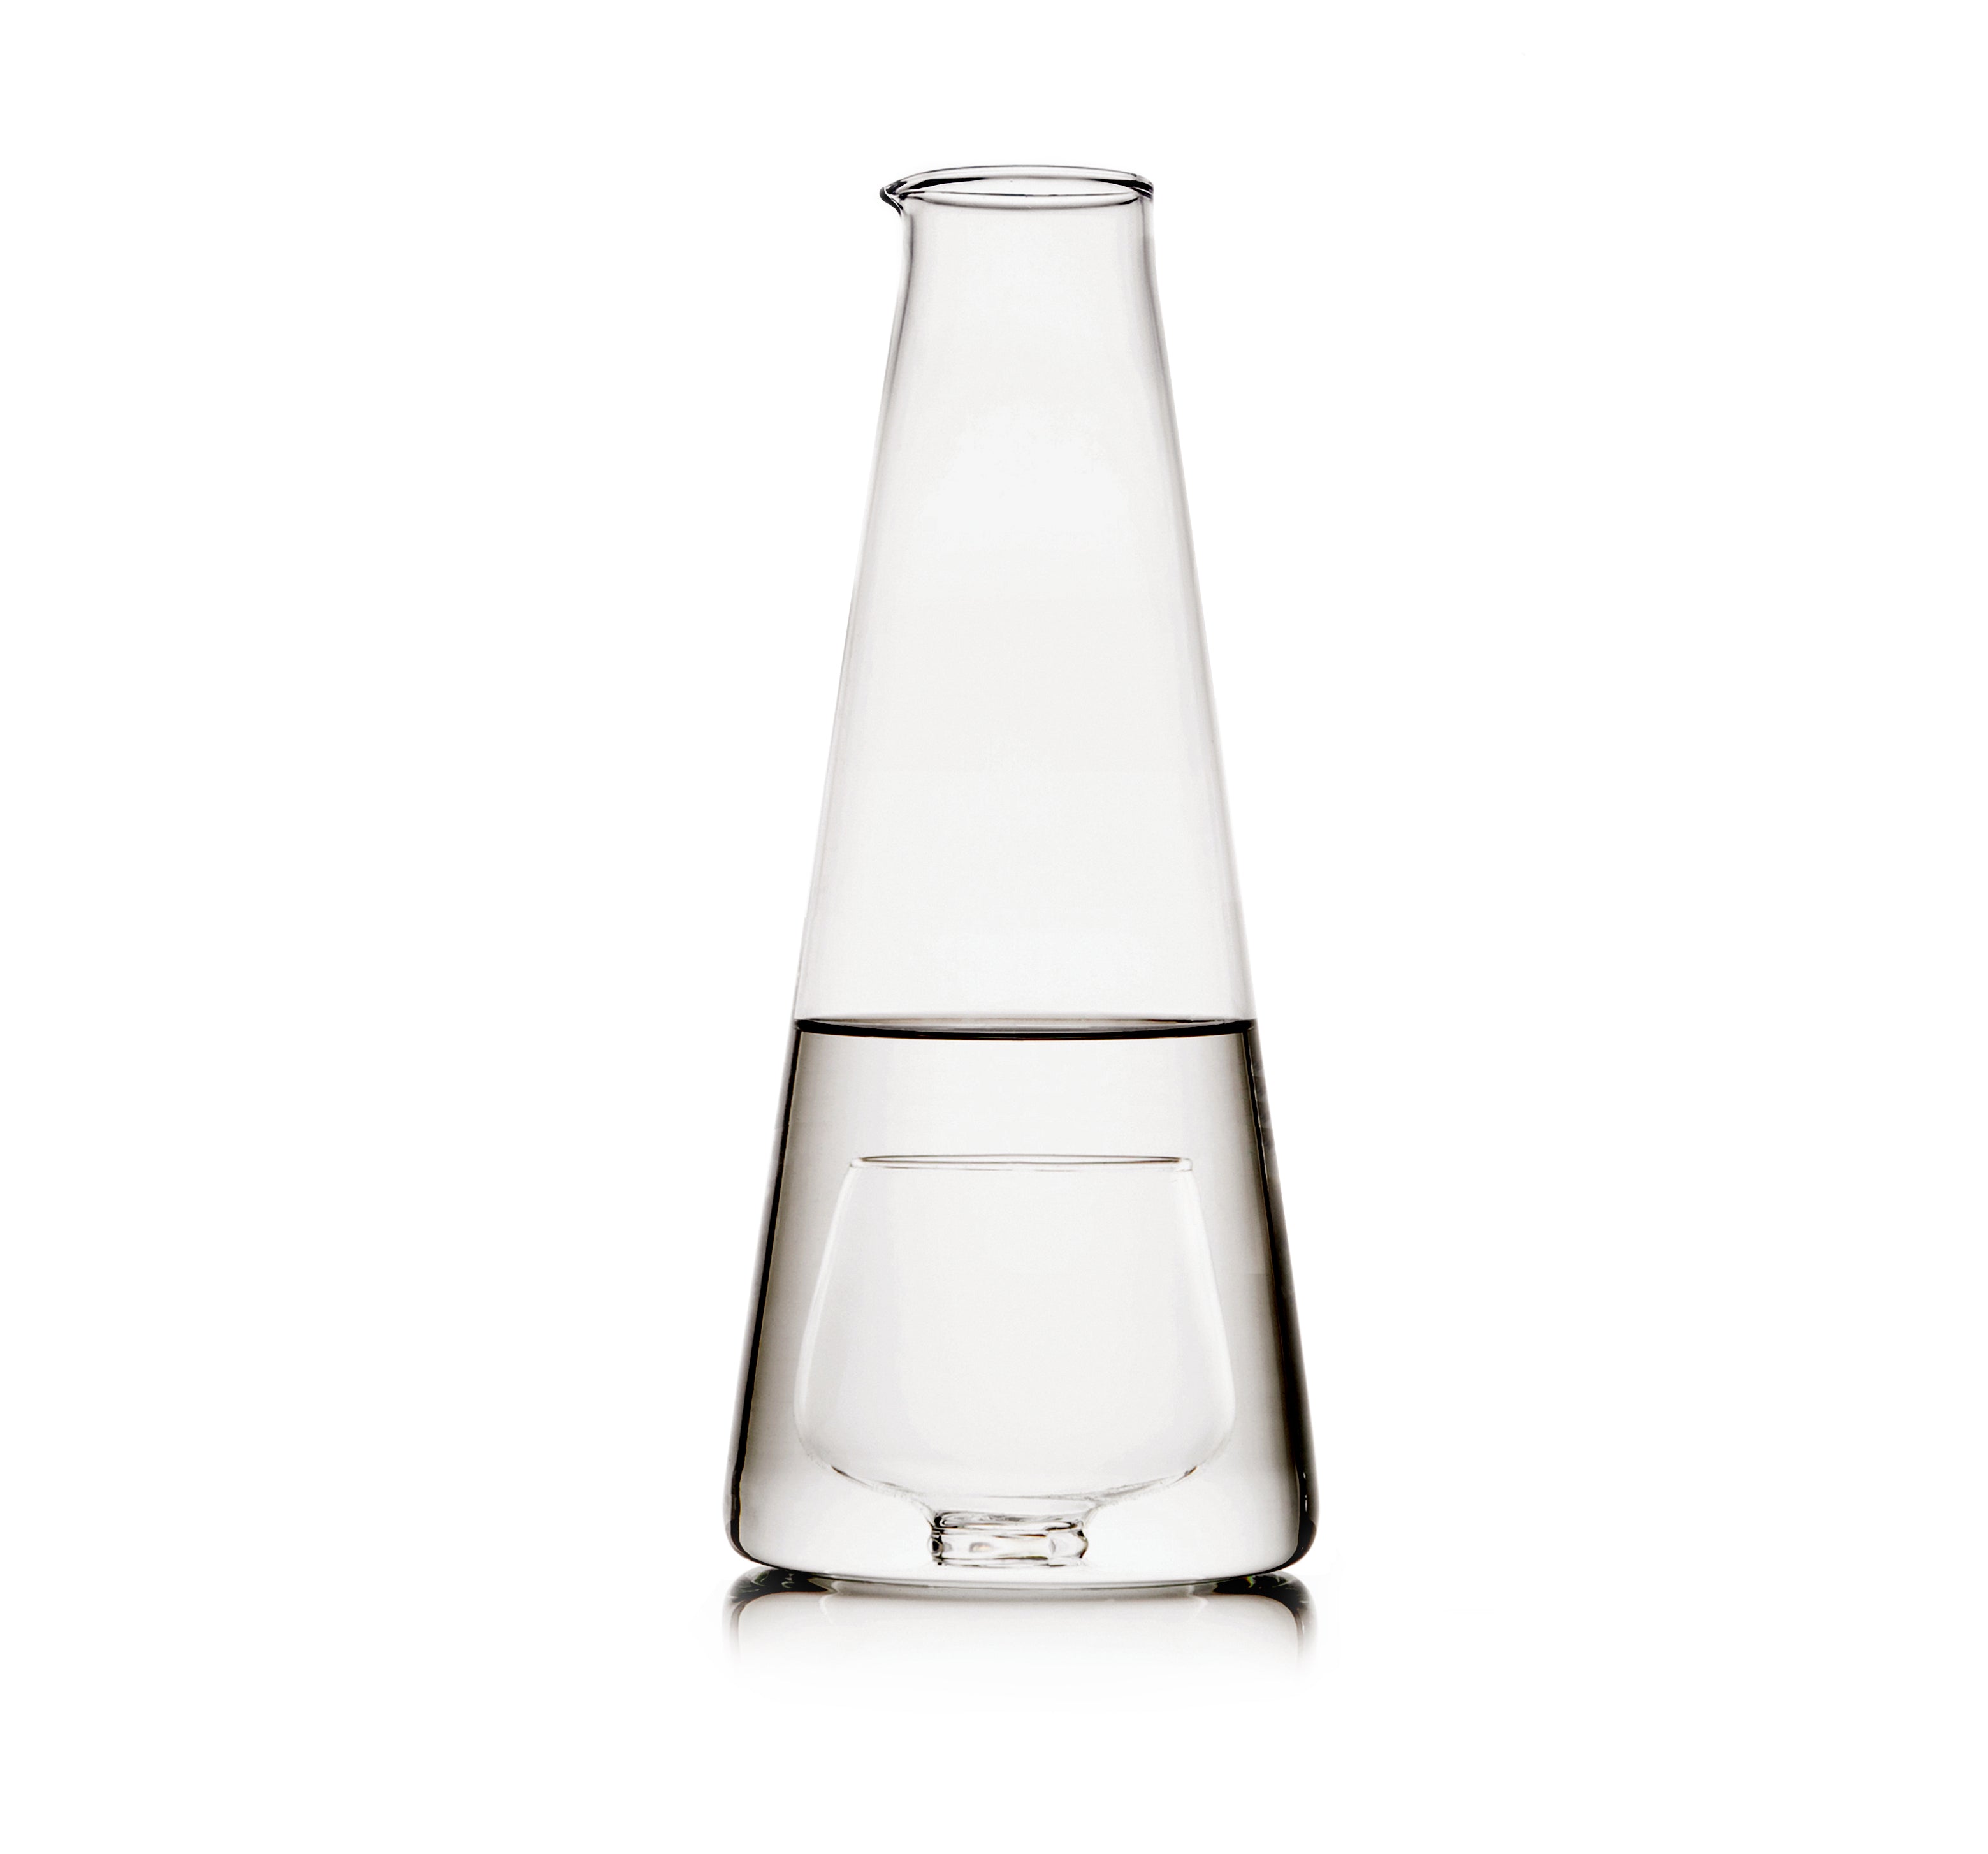 Ichendorf Bottle water carafe with glass